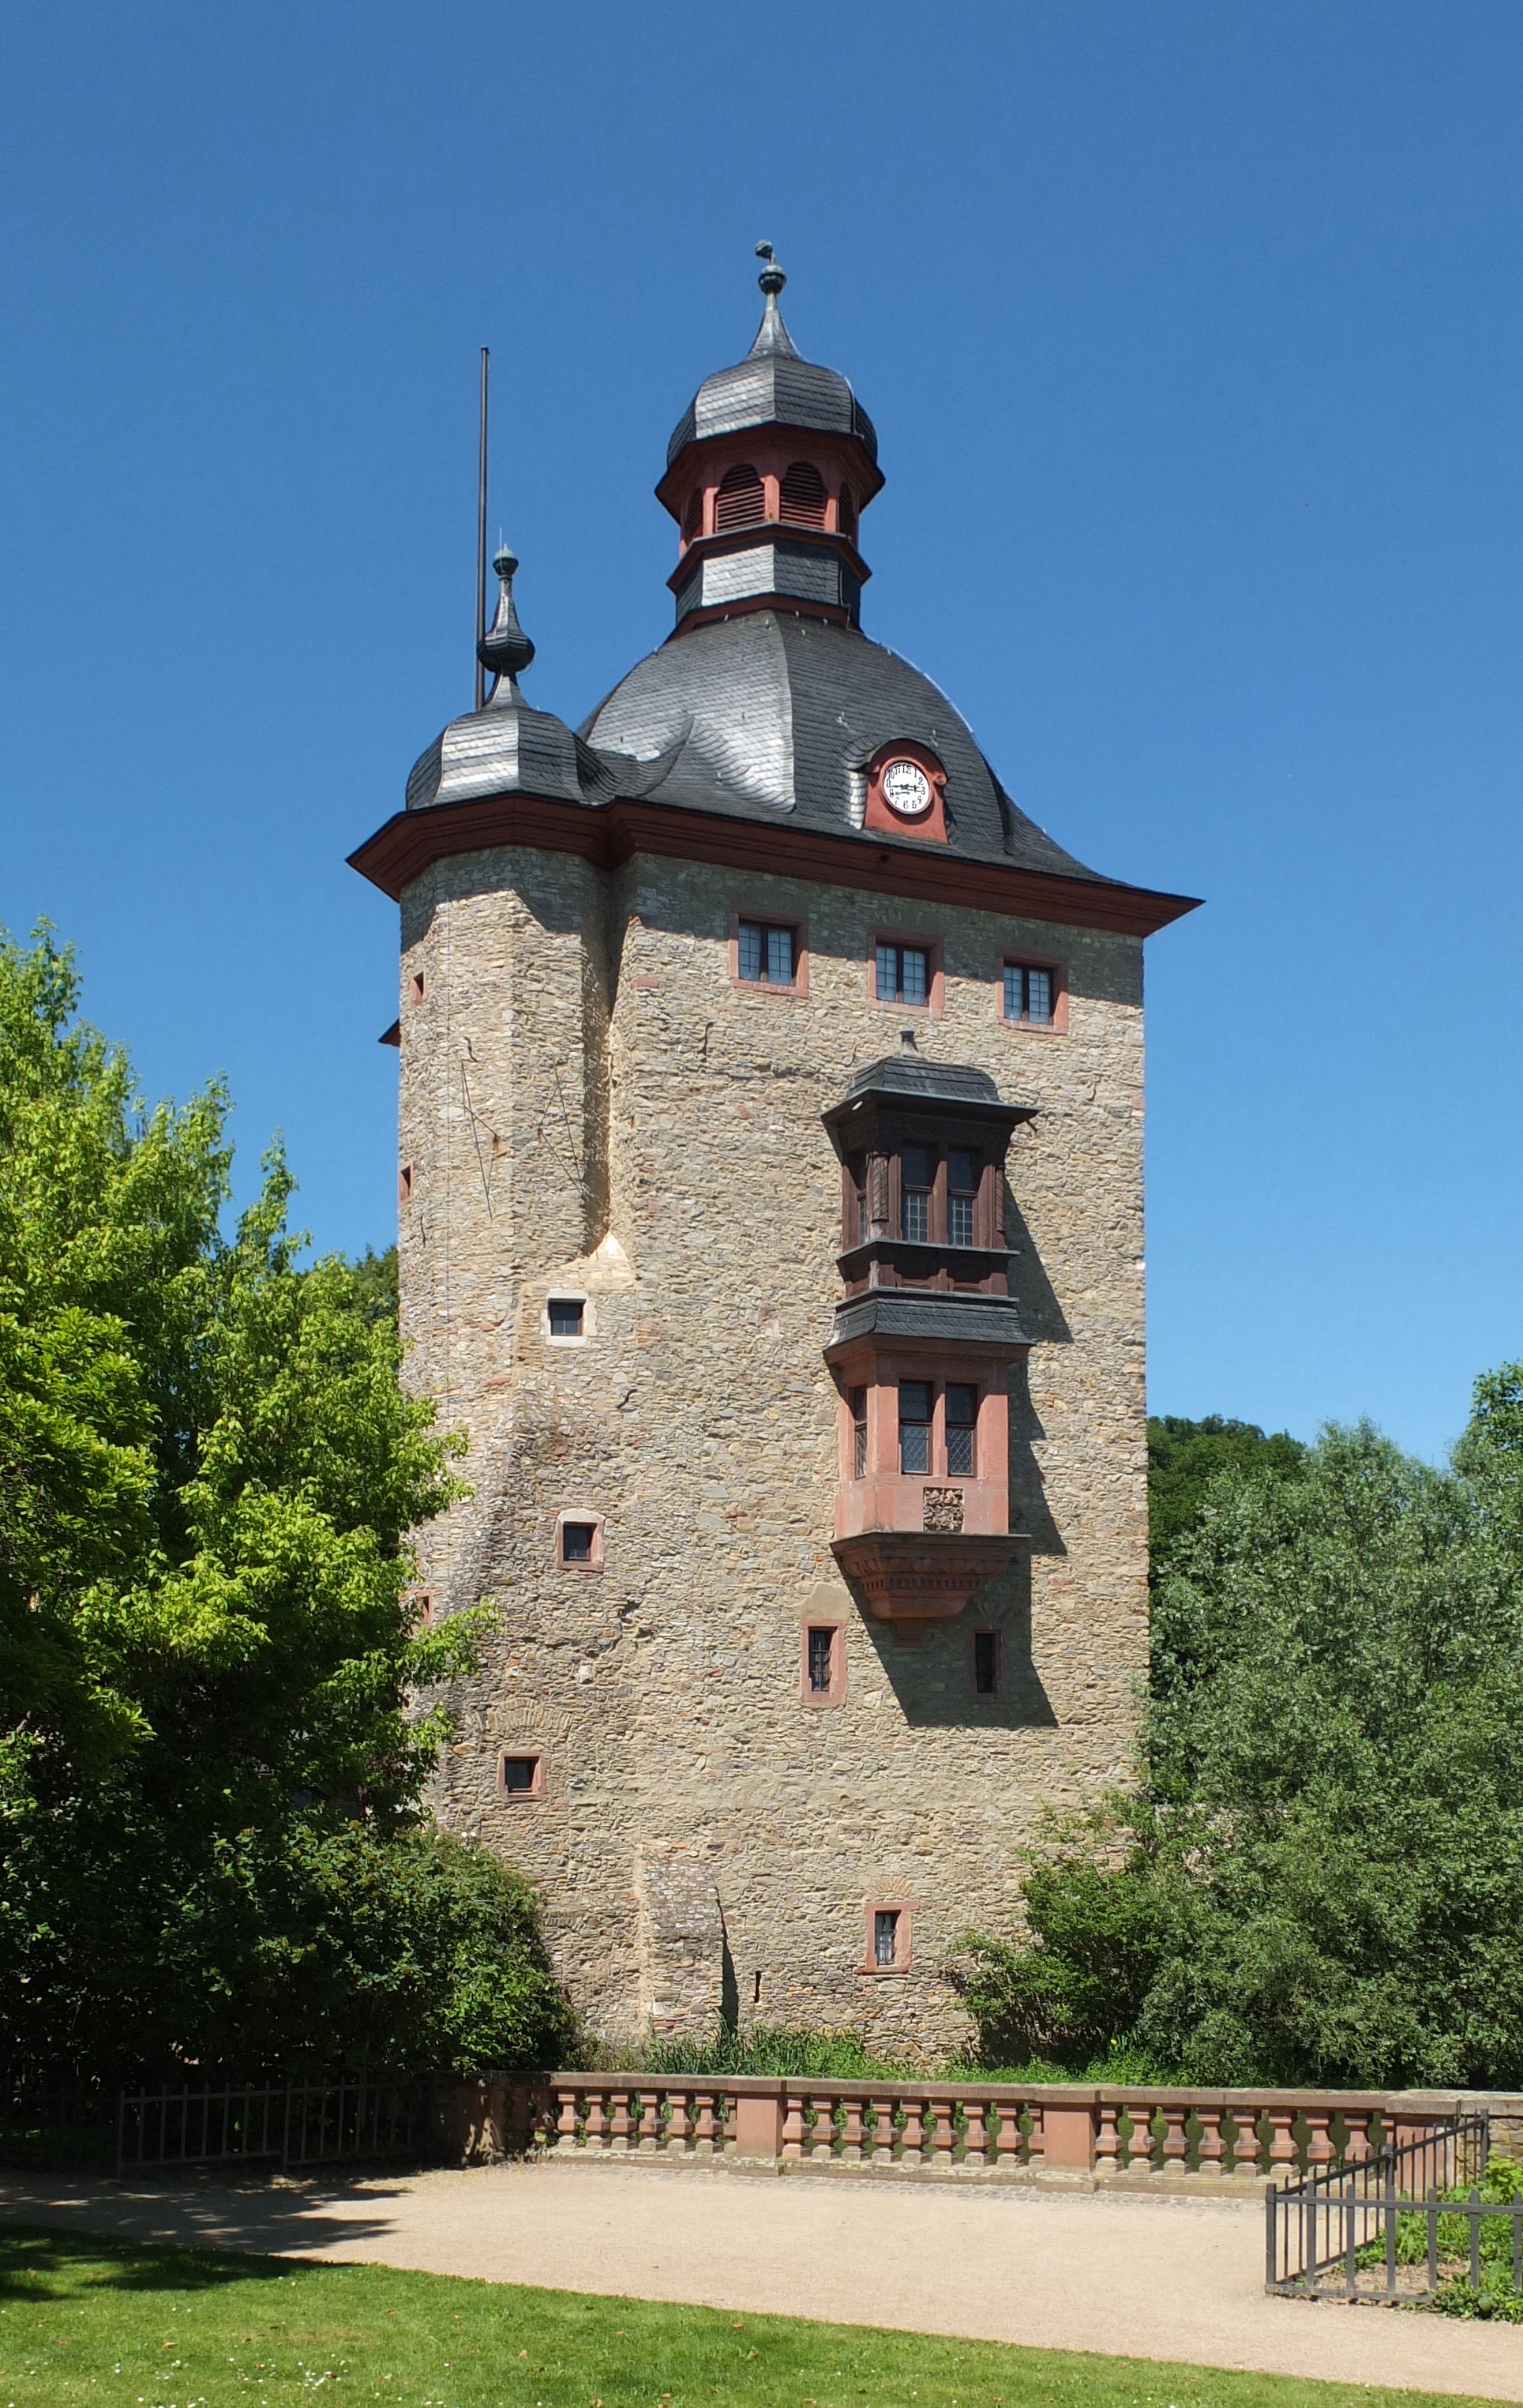 Vollrads Wohnturm